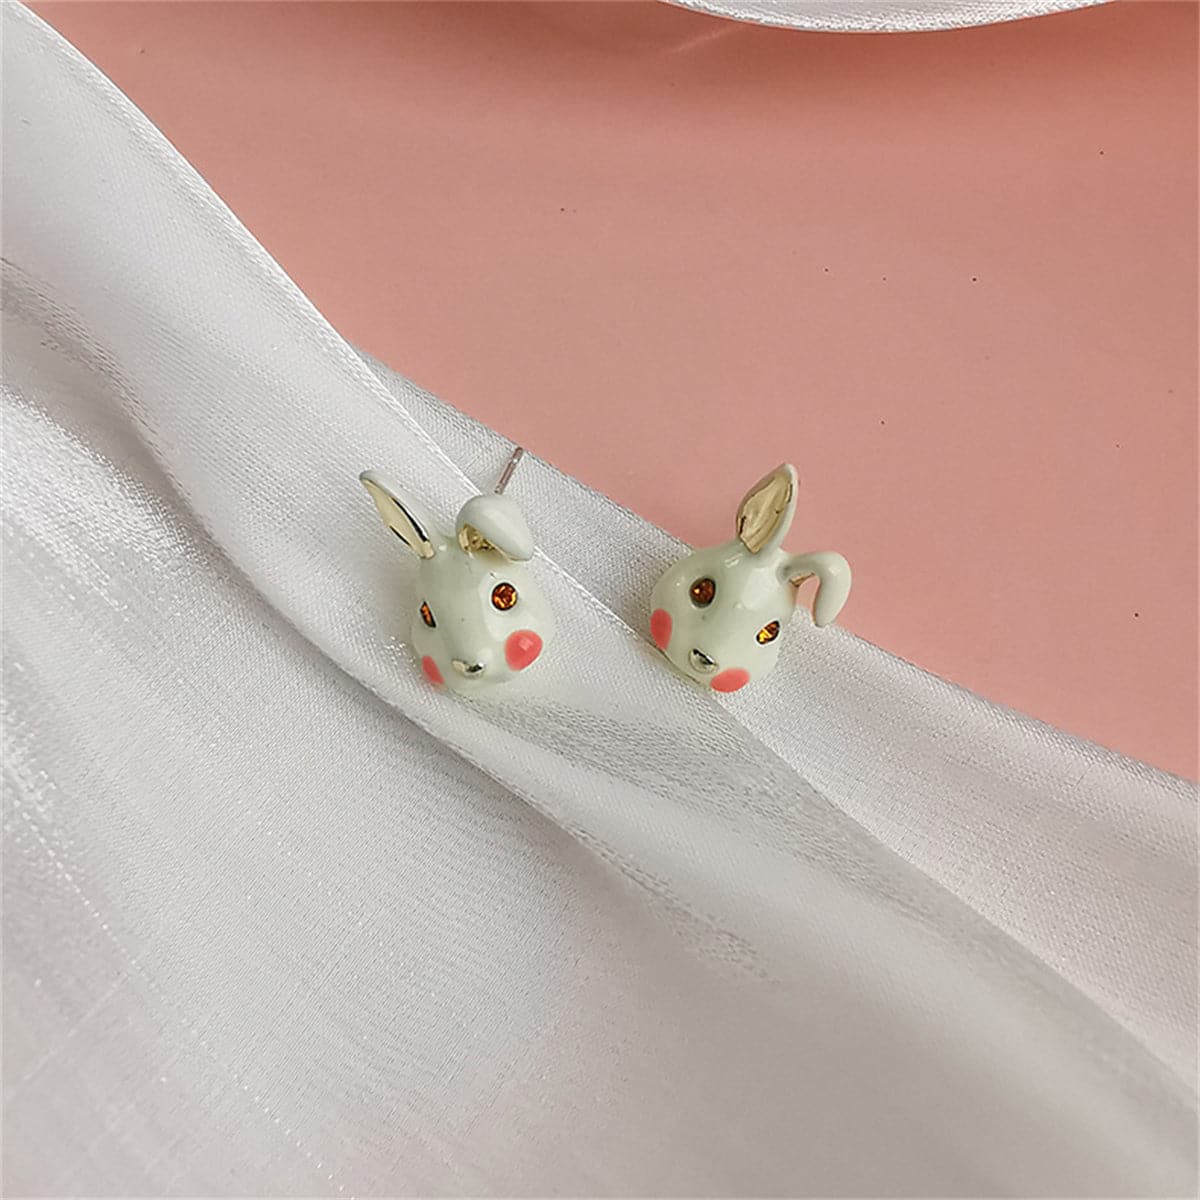 White Enamel & 18K Gold-Plated Rabbit Stud Earrings